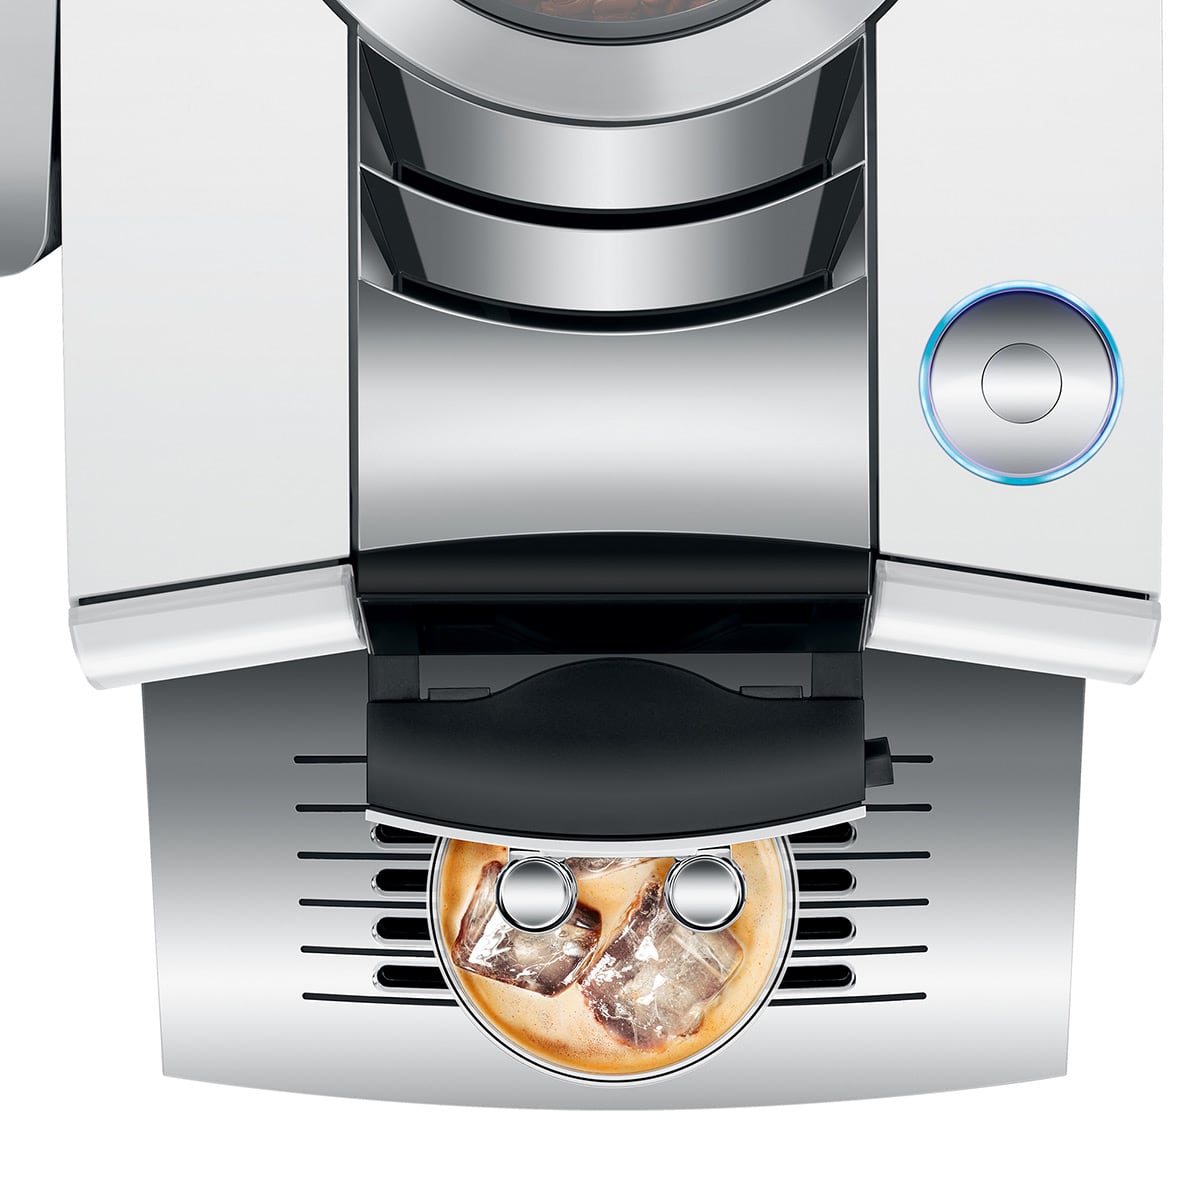 JURA Z10 Fully Automatic Espresso Machine